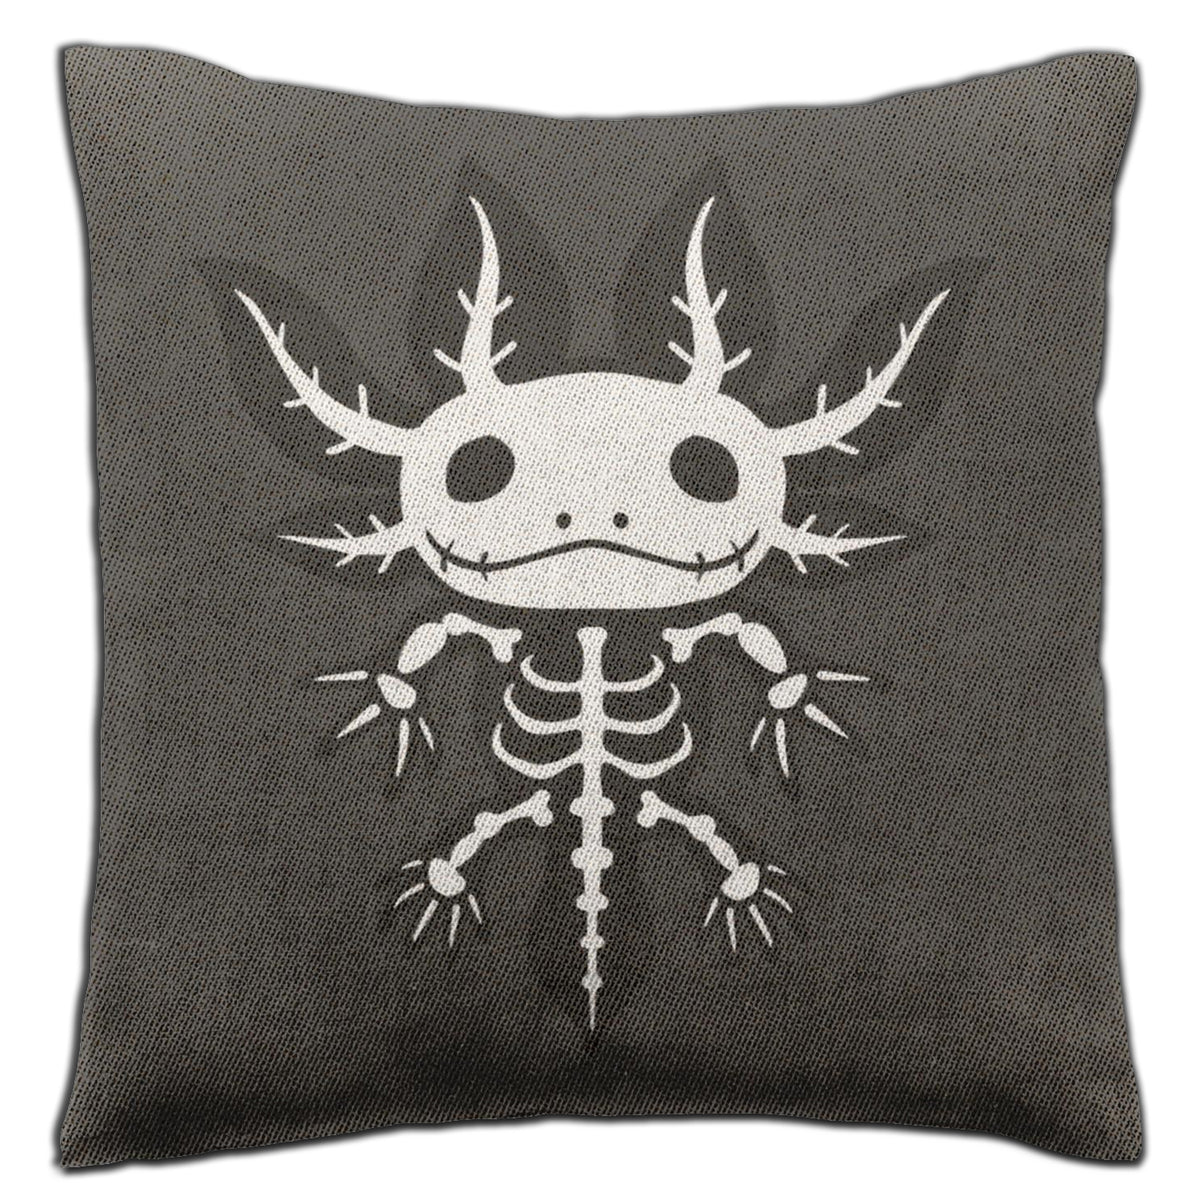 Axolotl Skeleton Woven Pillow